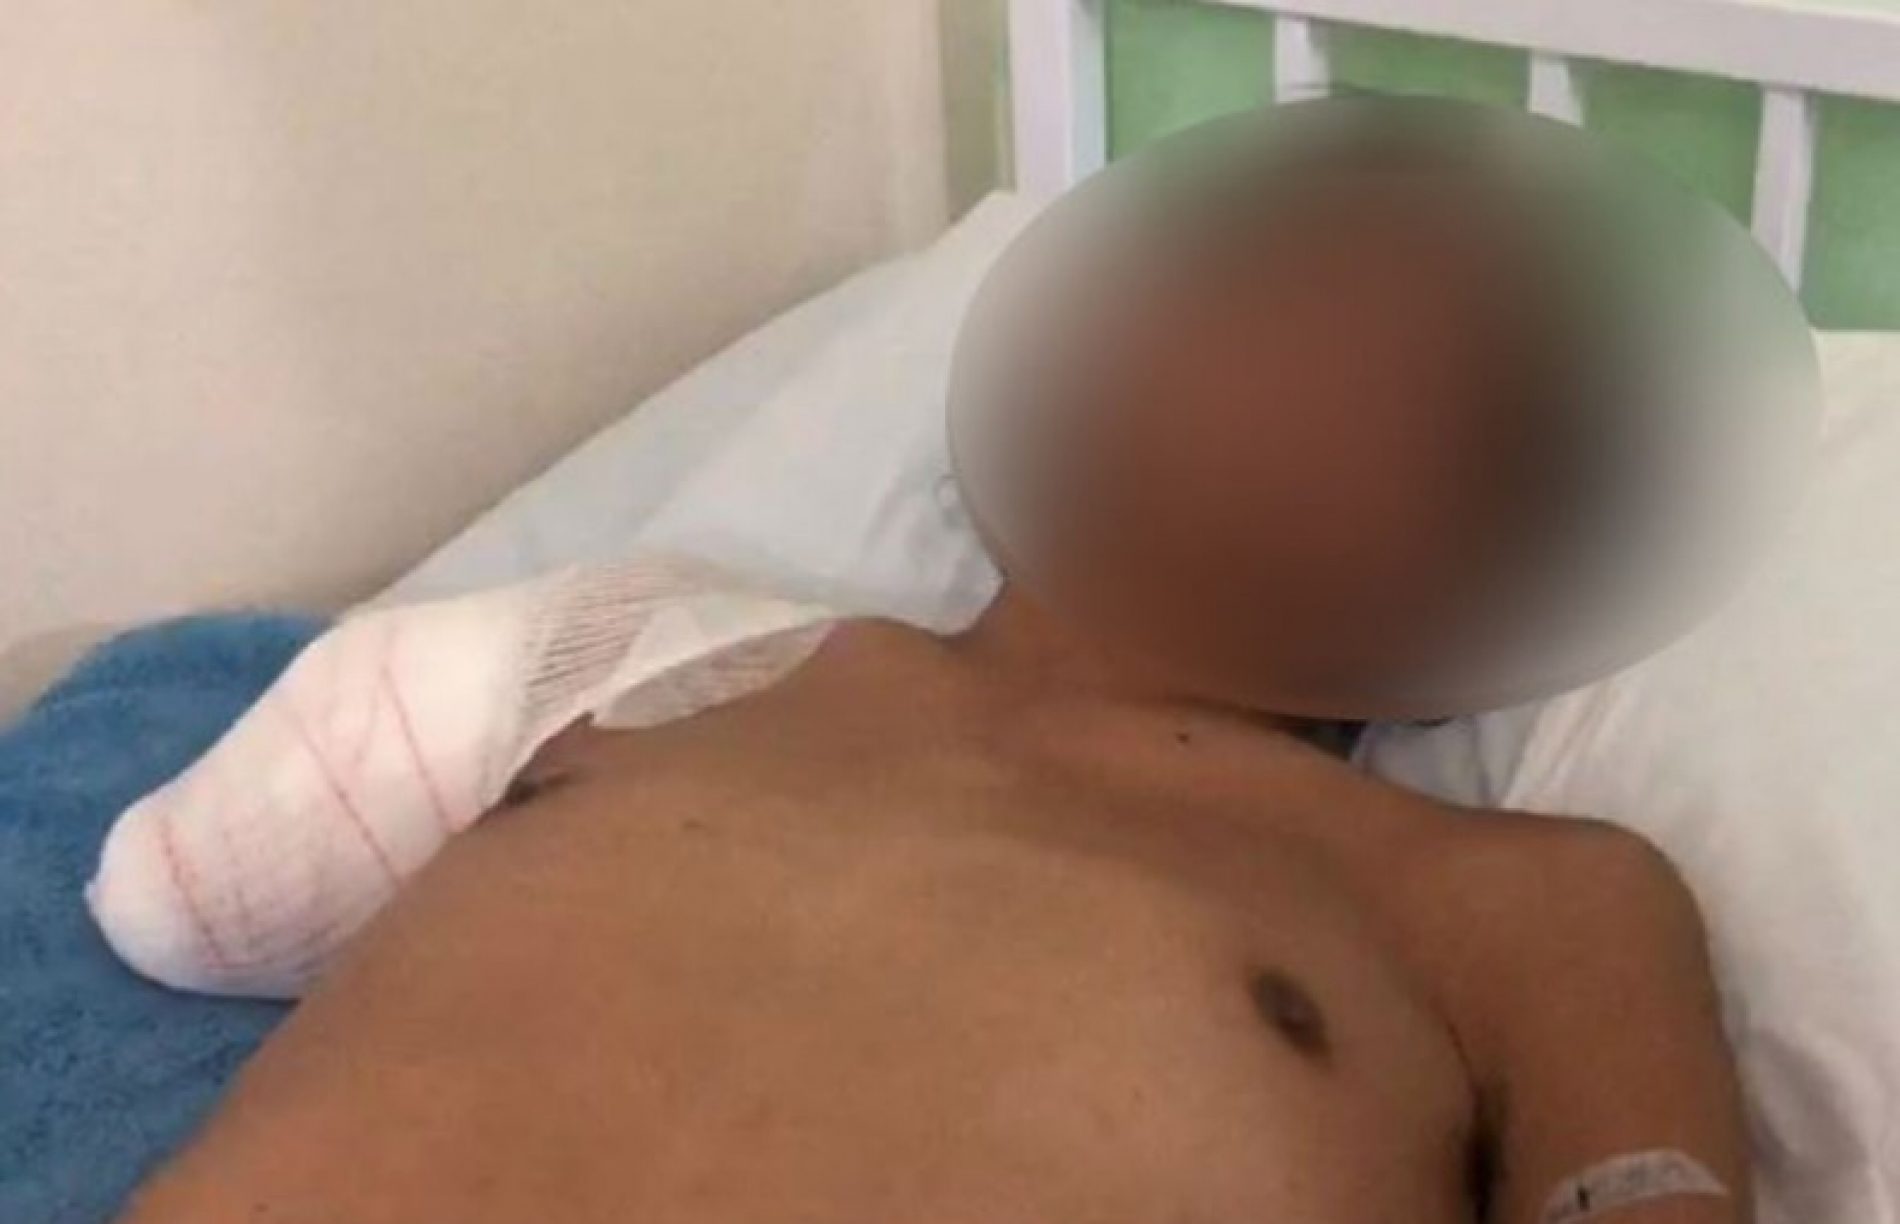 REGIÃO: Justiça absolve agressor de indígena que teve braço amputado